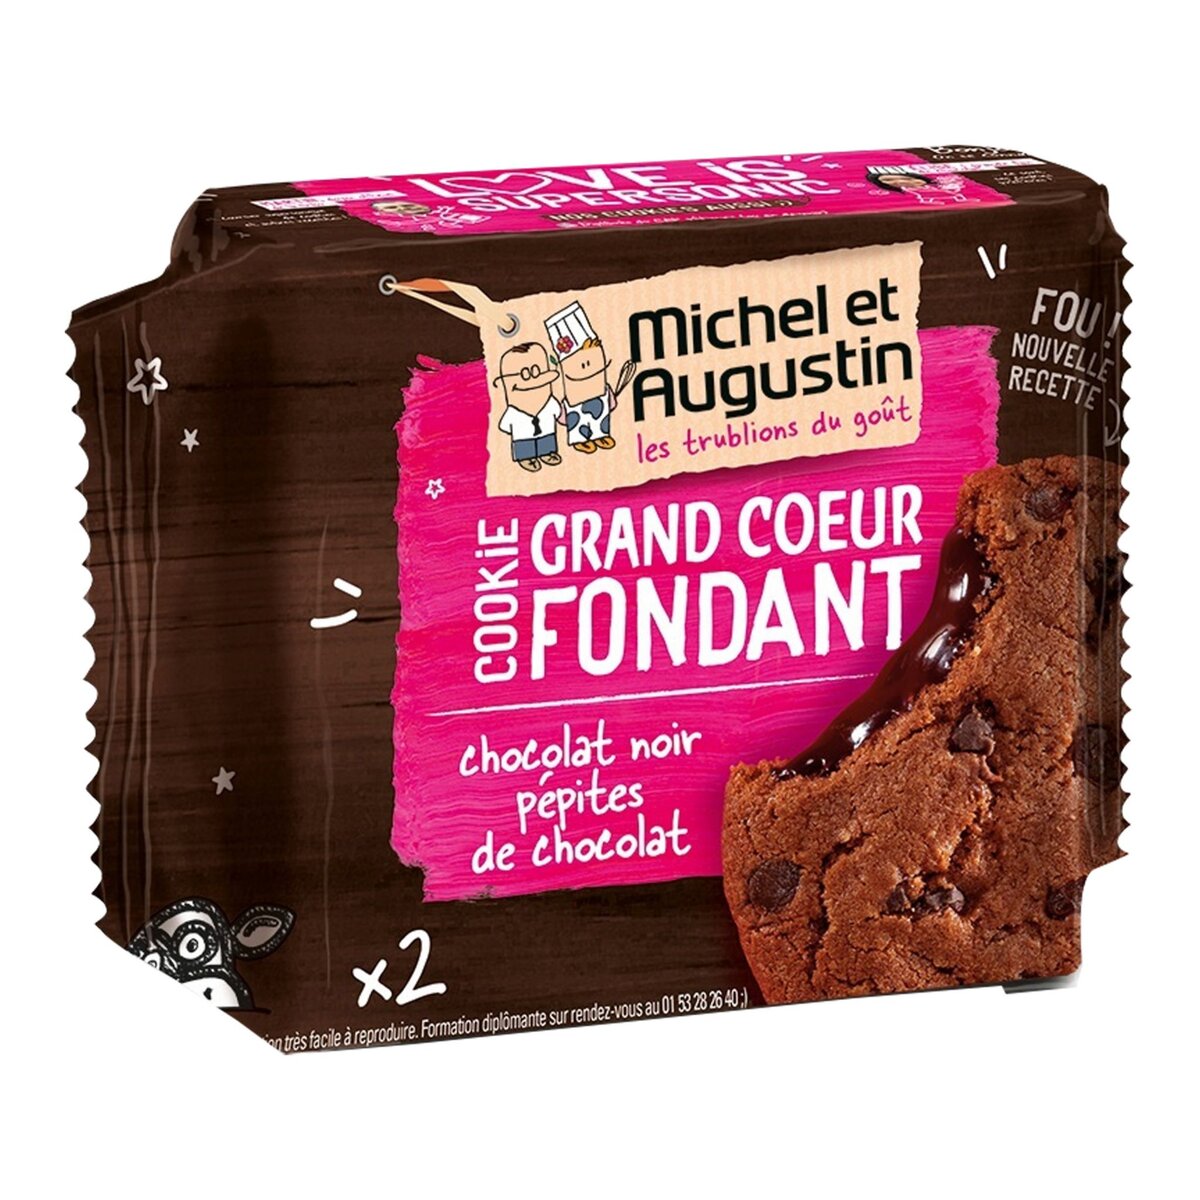 MICHEL ET AUGUSTIN Michel et Augustin cookie fondant choco 60g